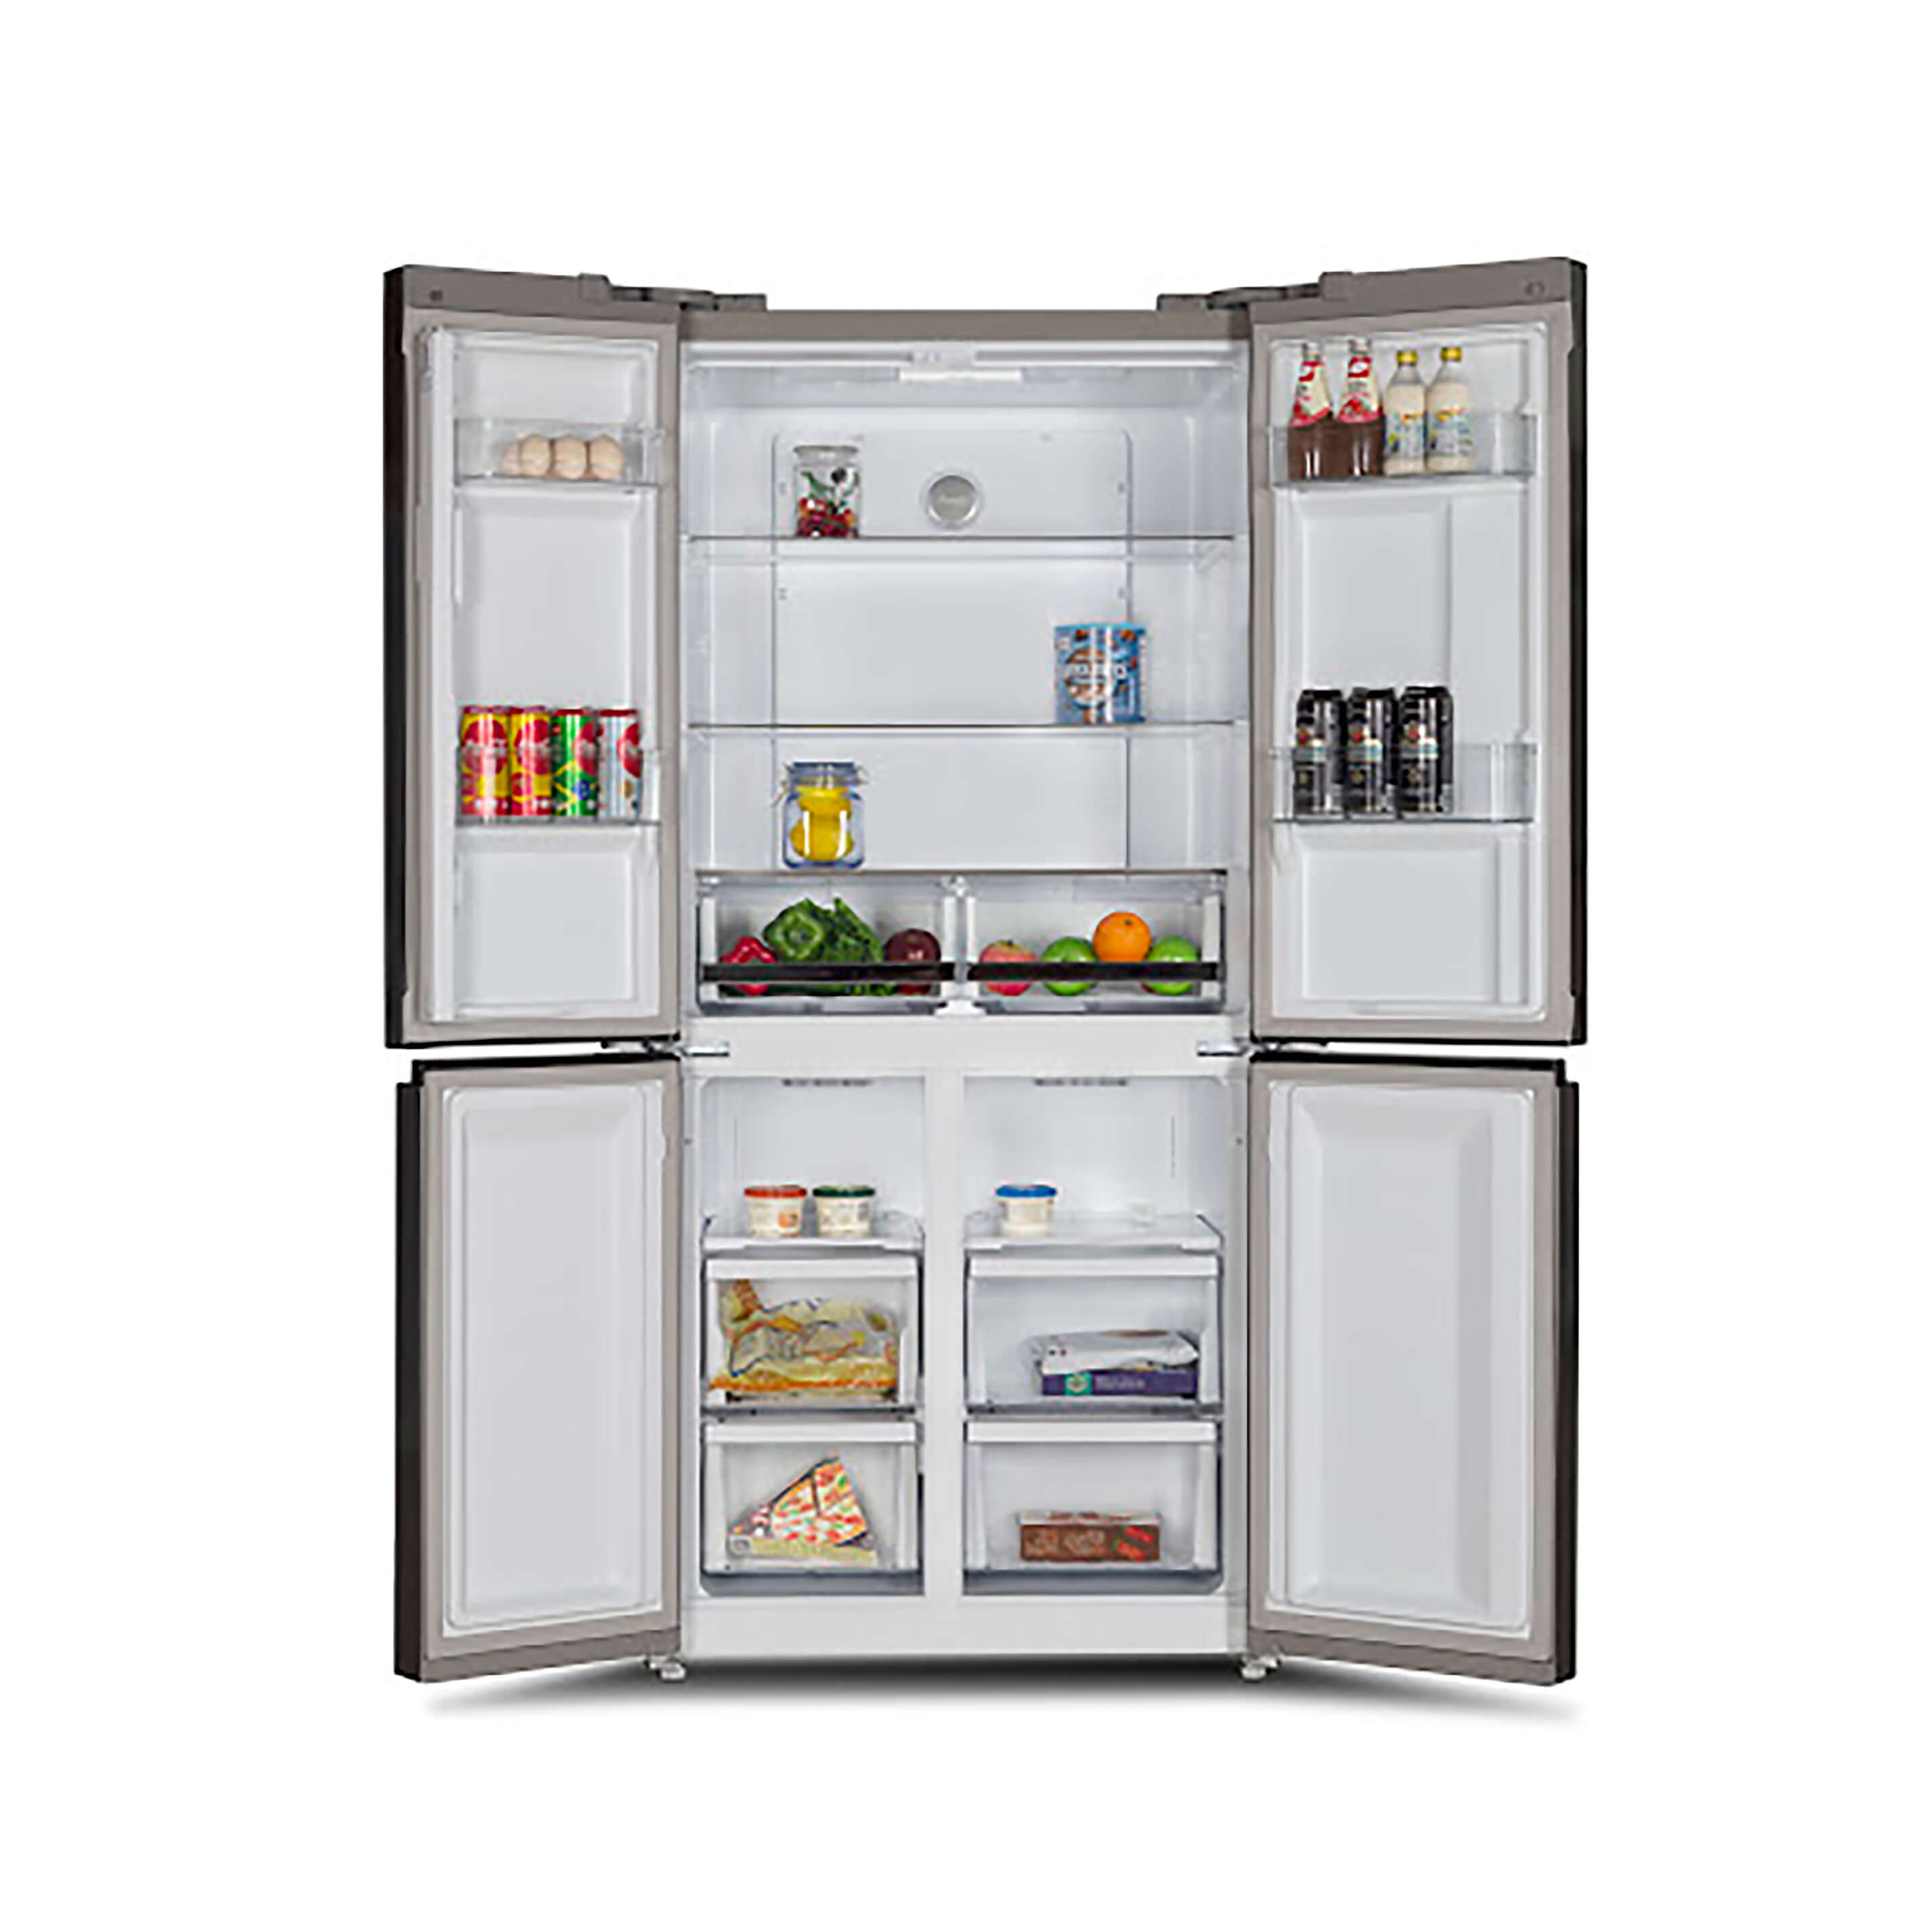 Tủ Lạnh Side by Side KAFF KF-BCD446W - Dung tích 446 Lít, 4 cánh độc lập, Inverter, Giữ lạnh lâu